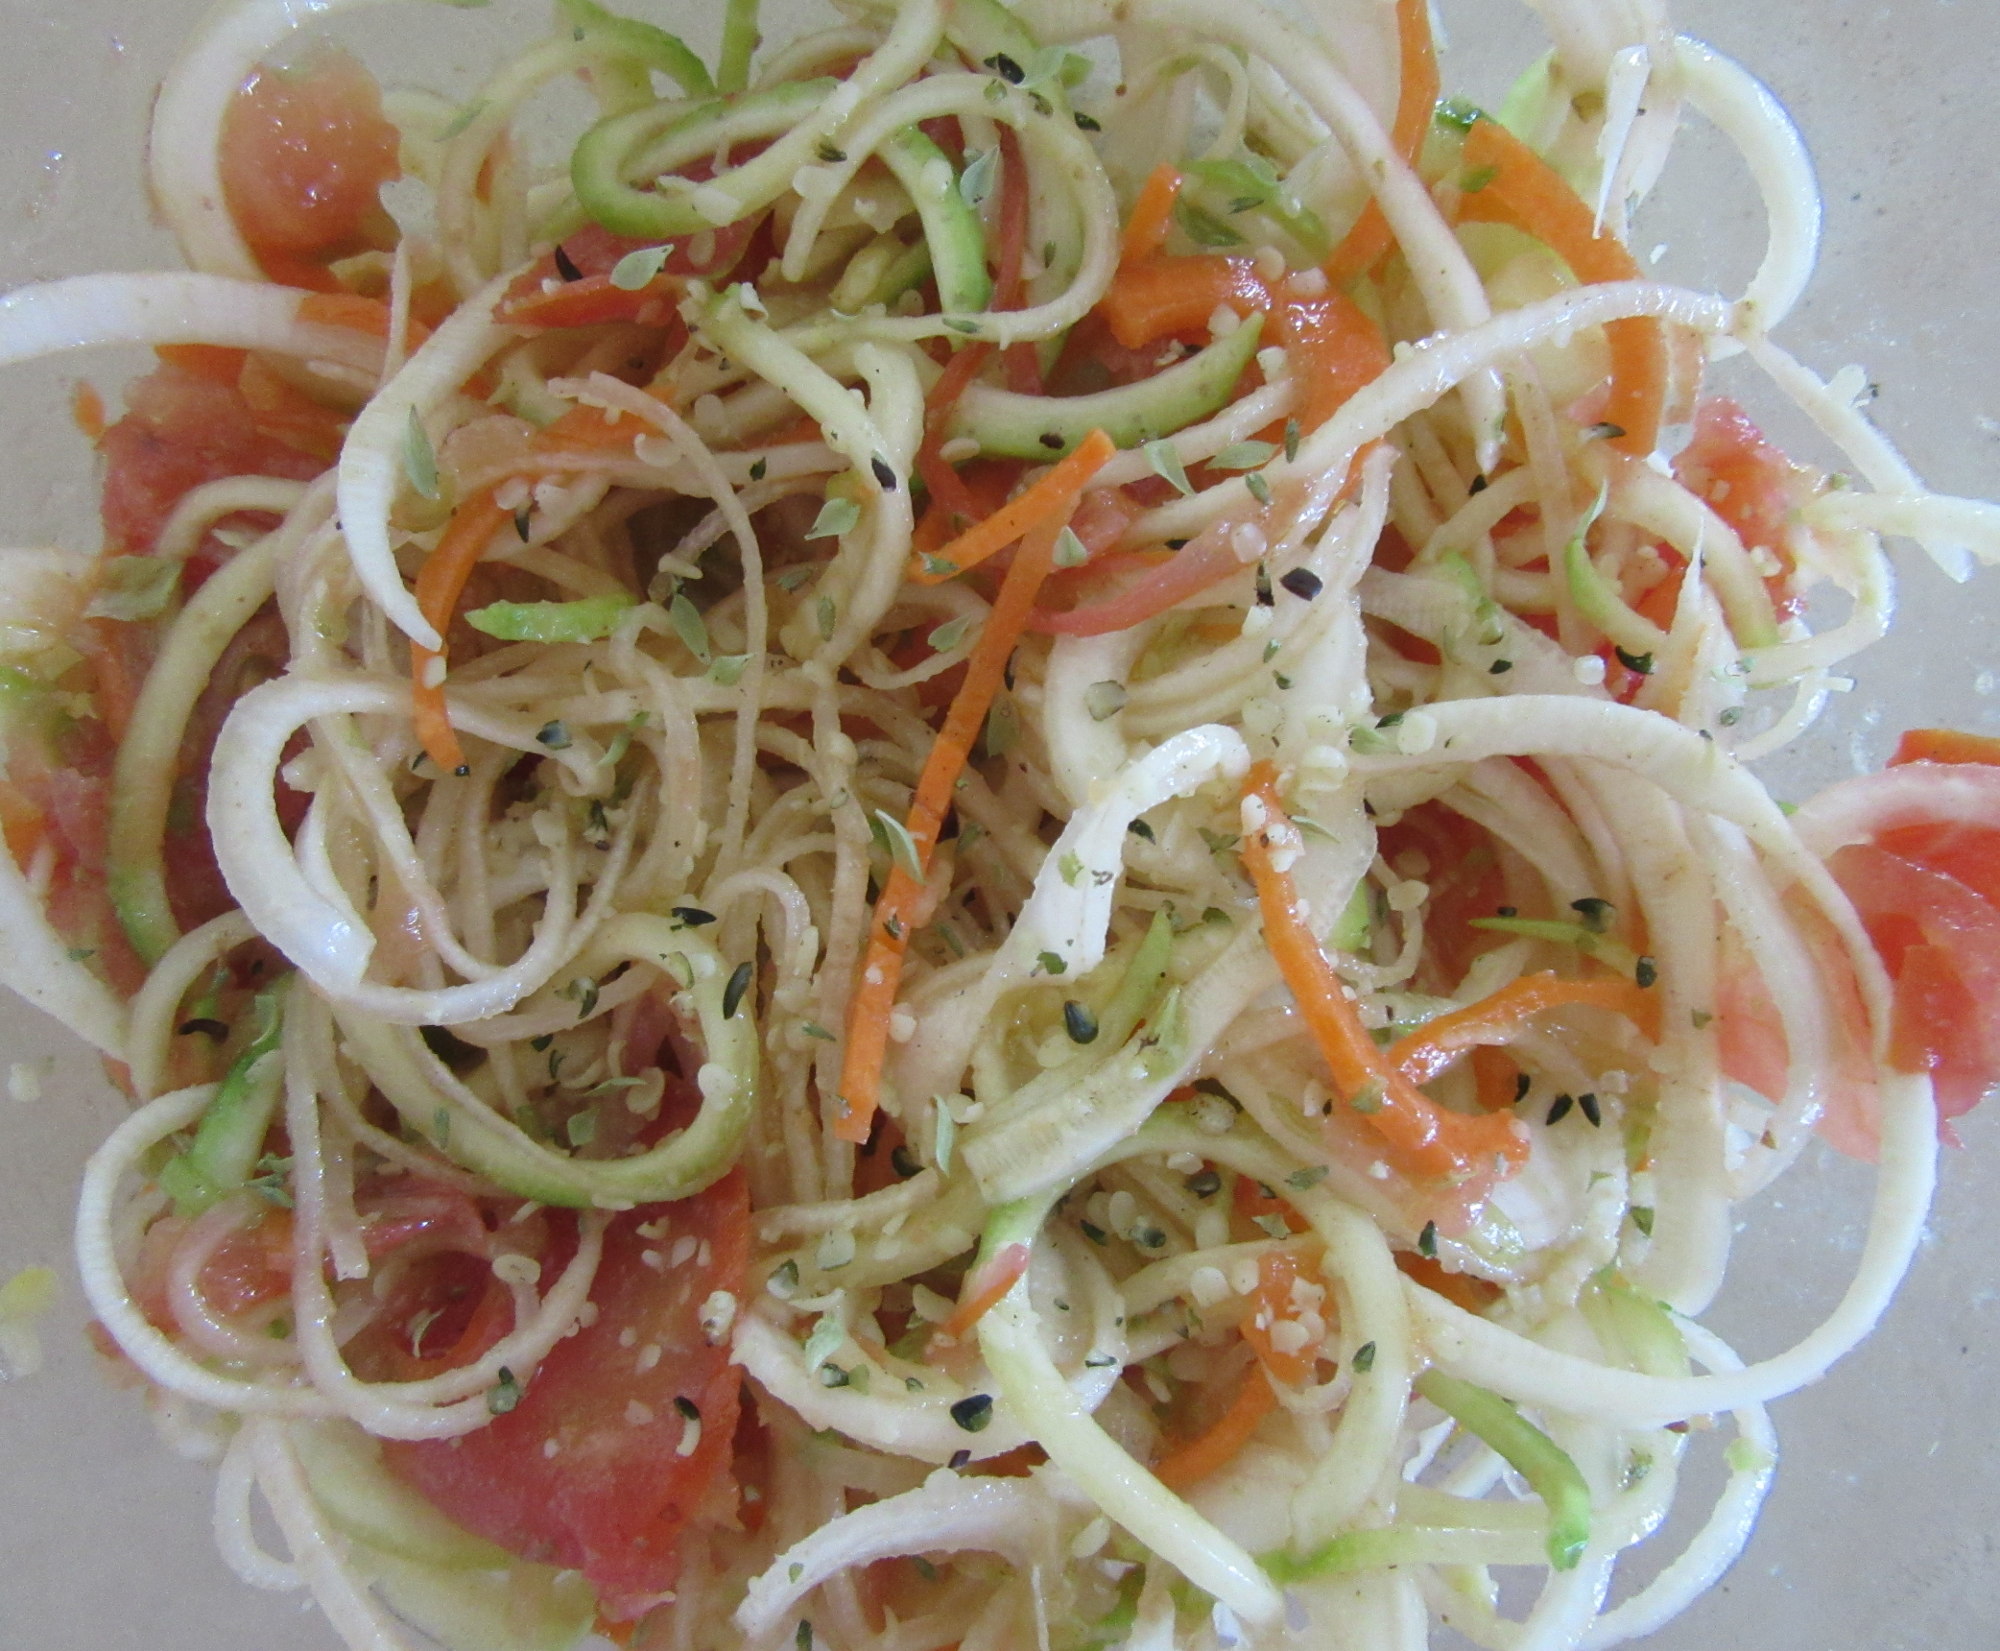 Salada composta por legumes cortados em forma de espiral.